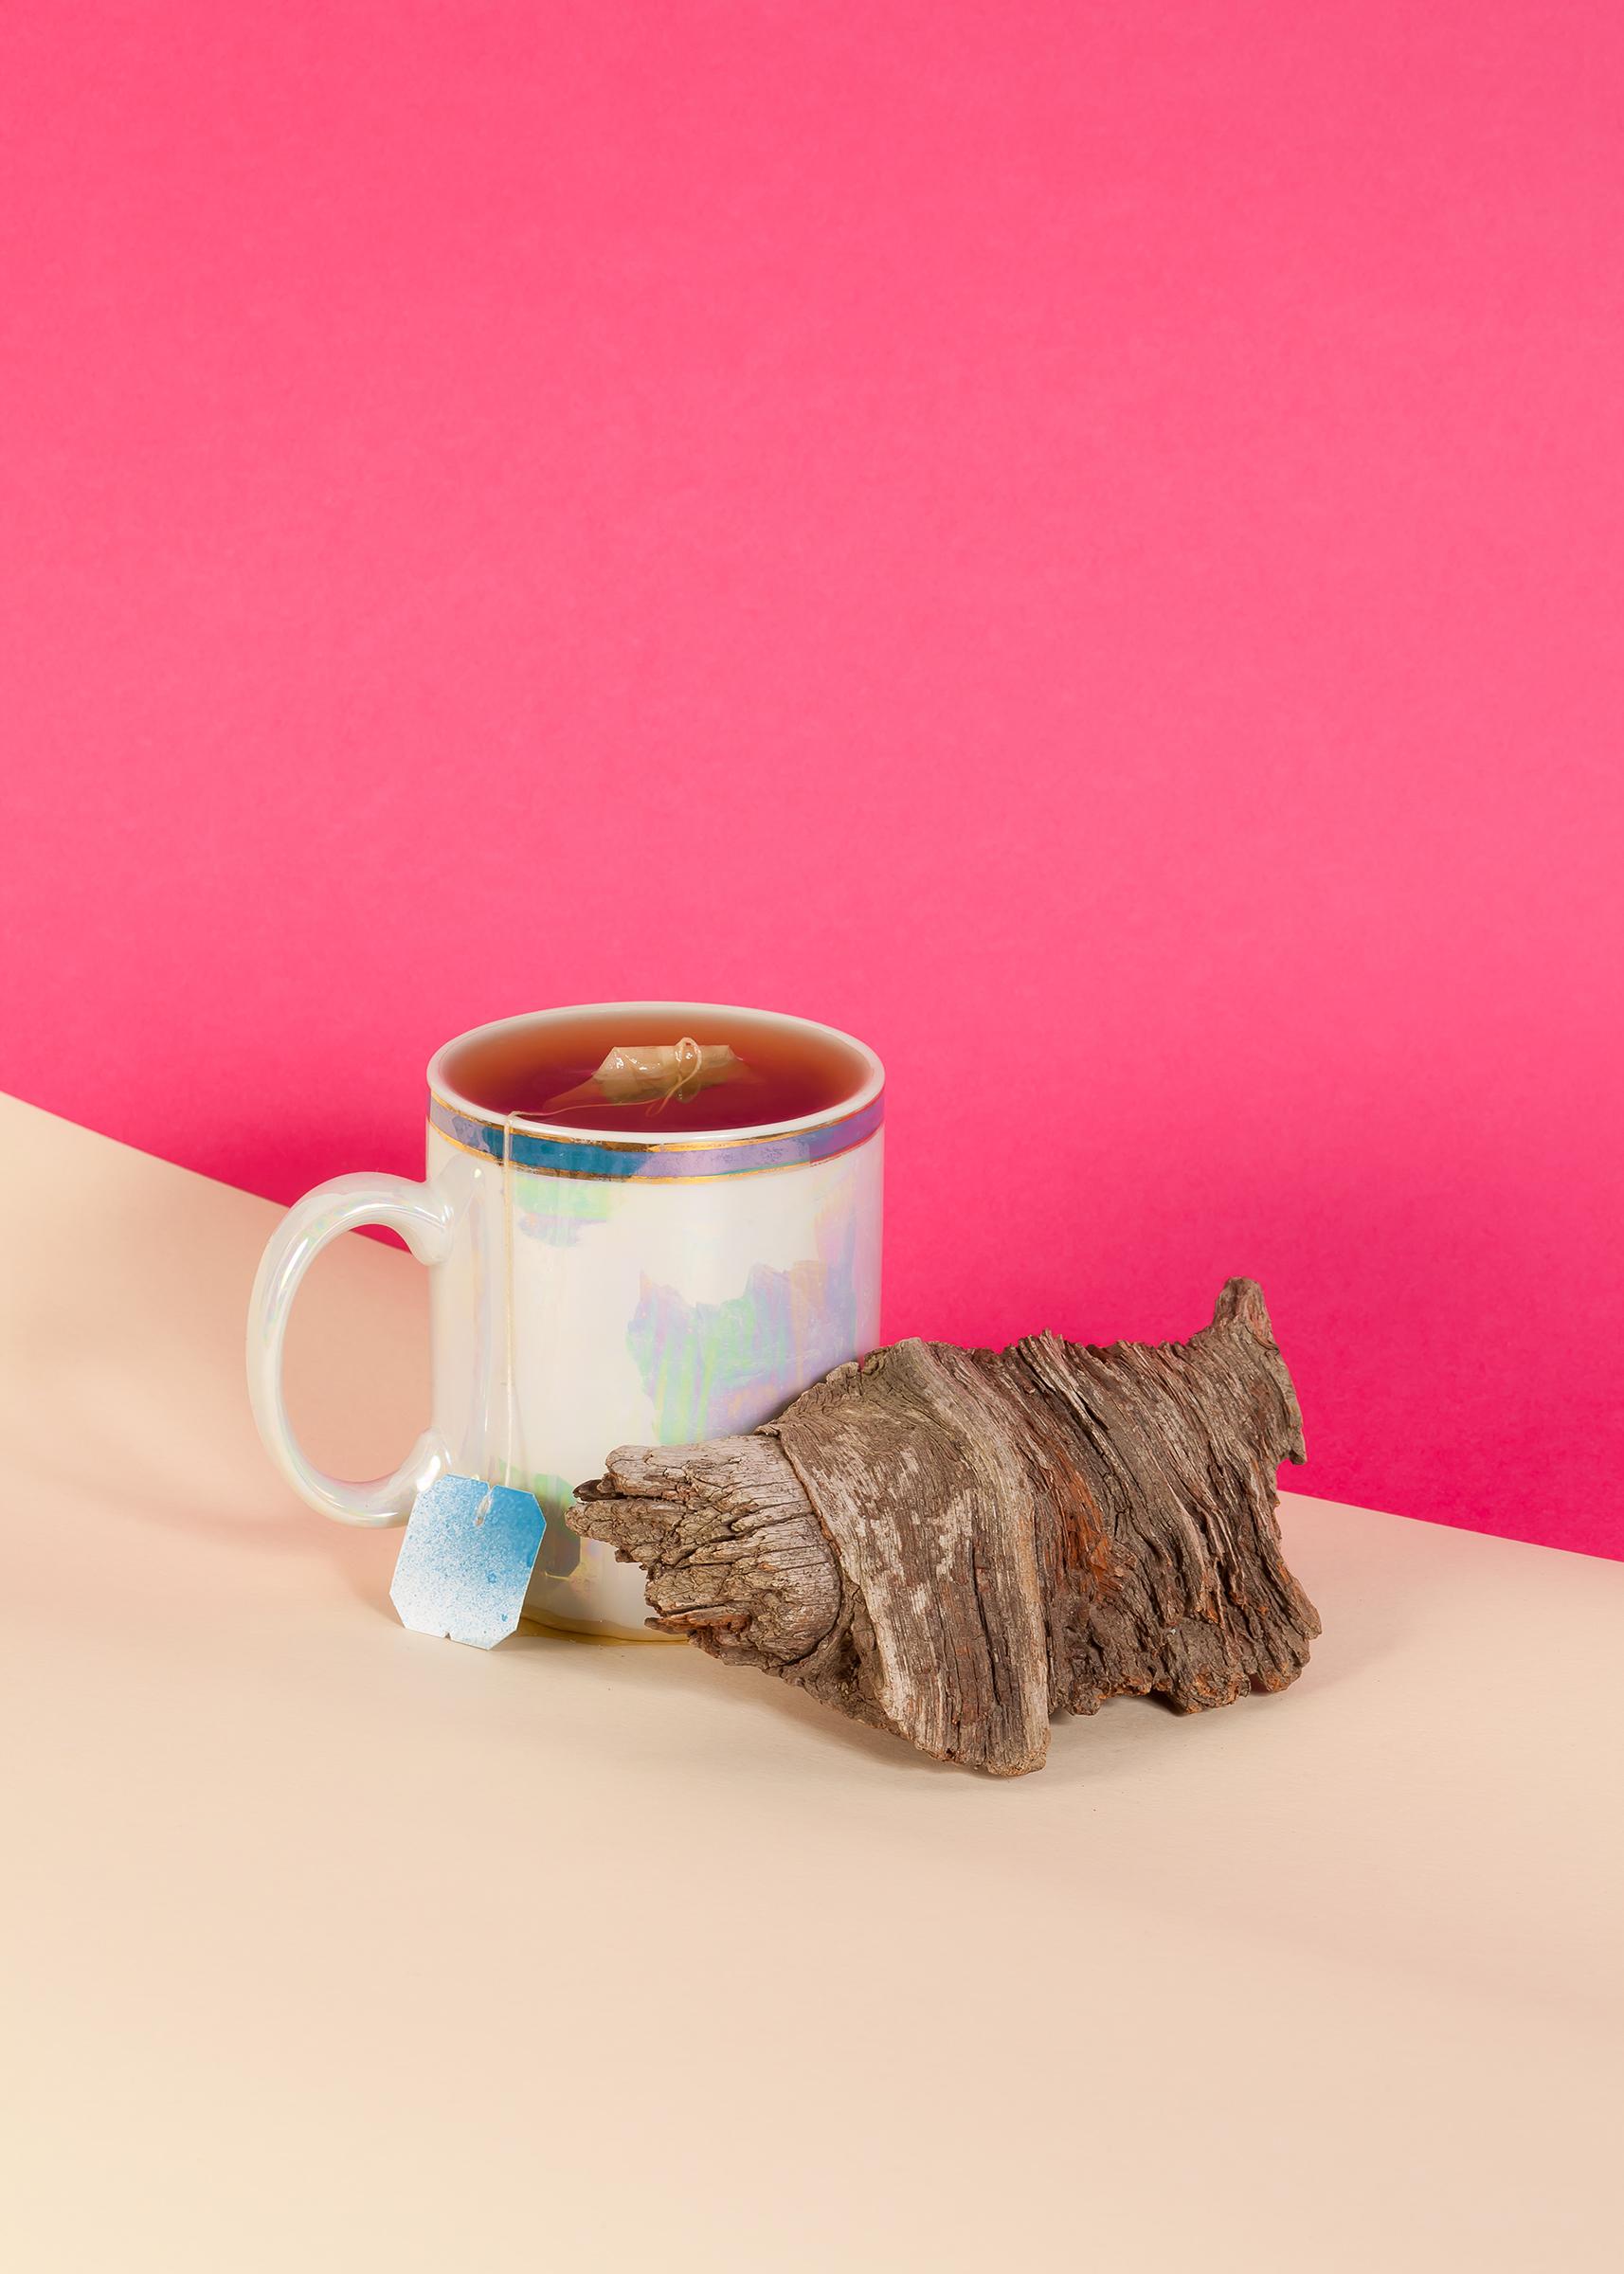 Still-Life Photograph Ryan Rivadeneyra - Scène de nature morte sur fond rose, tasse de thé, croissant en bois, rétro, Giclée 